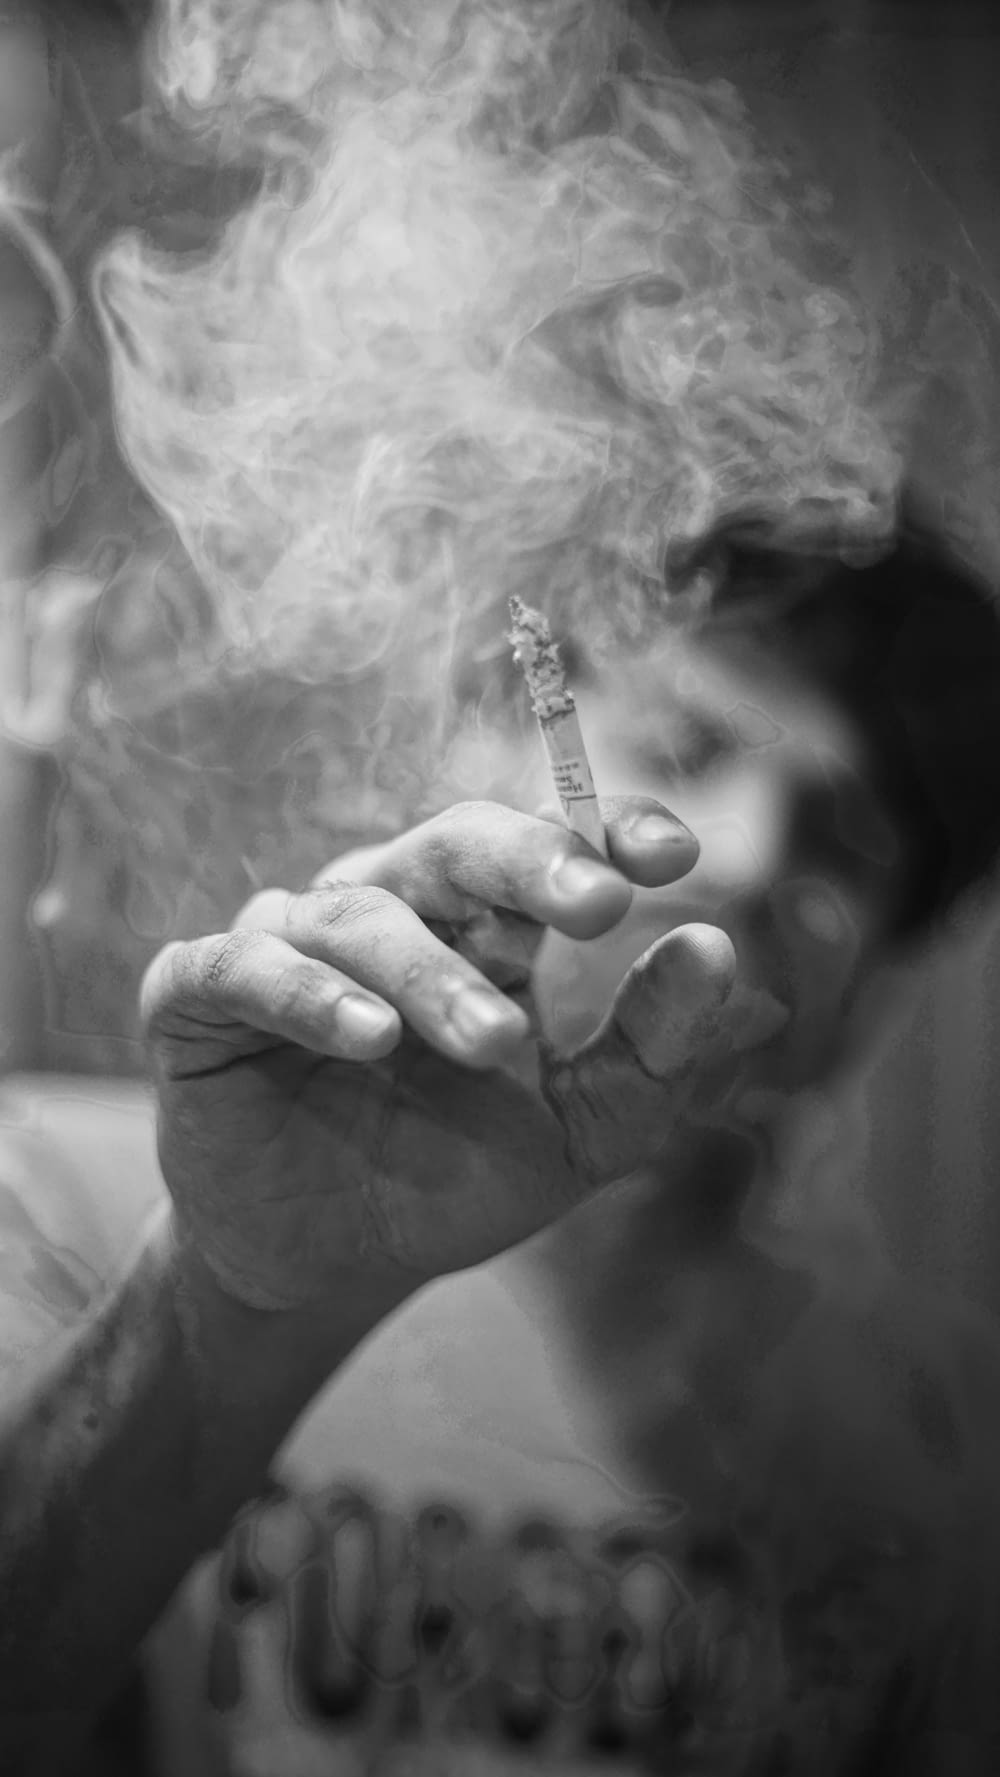 タバコのスティックを持っている人のグレースケール写真